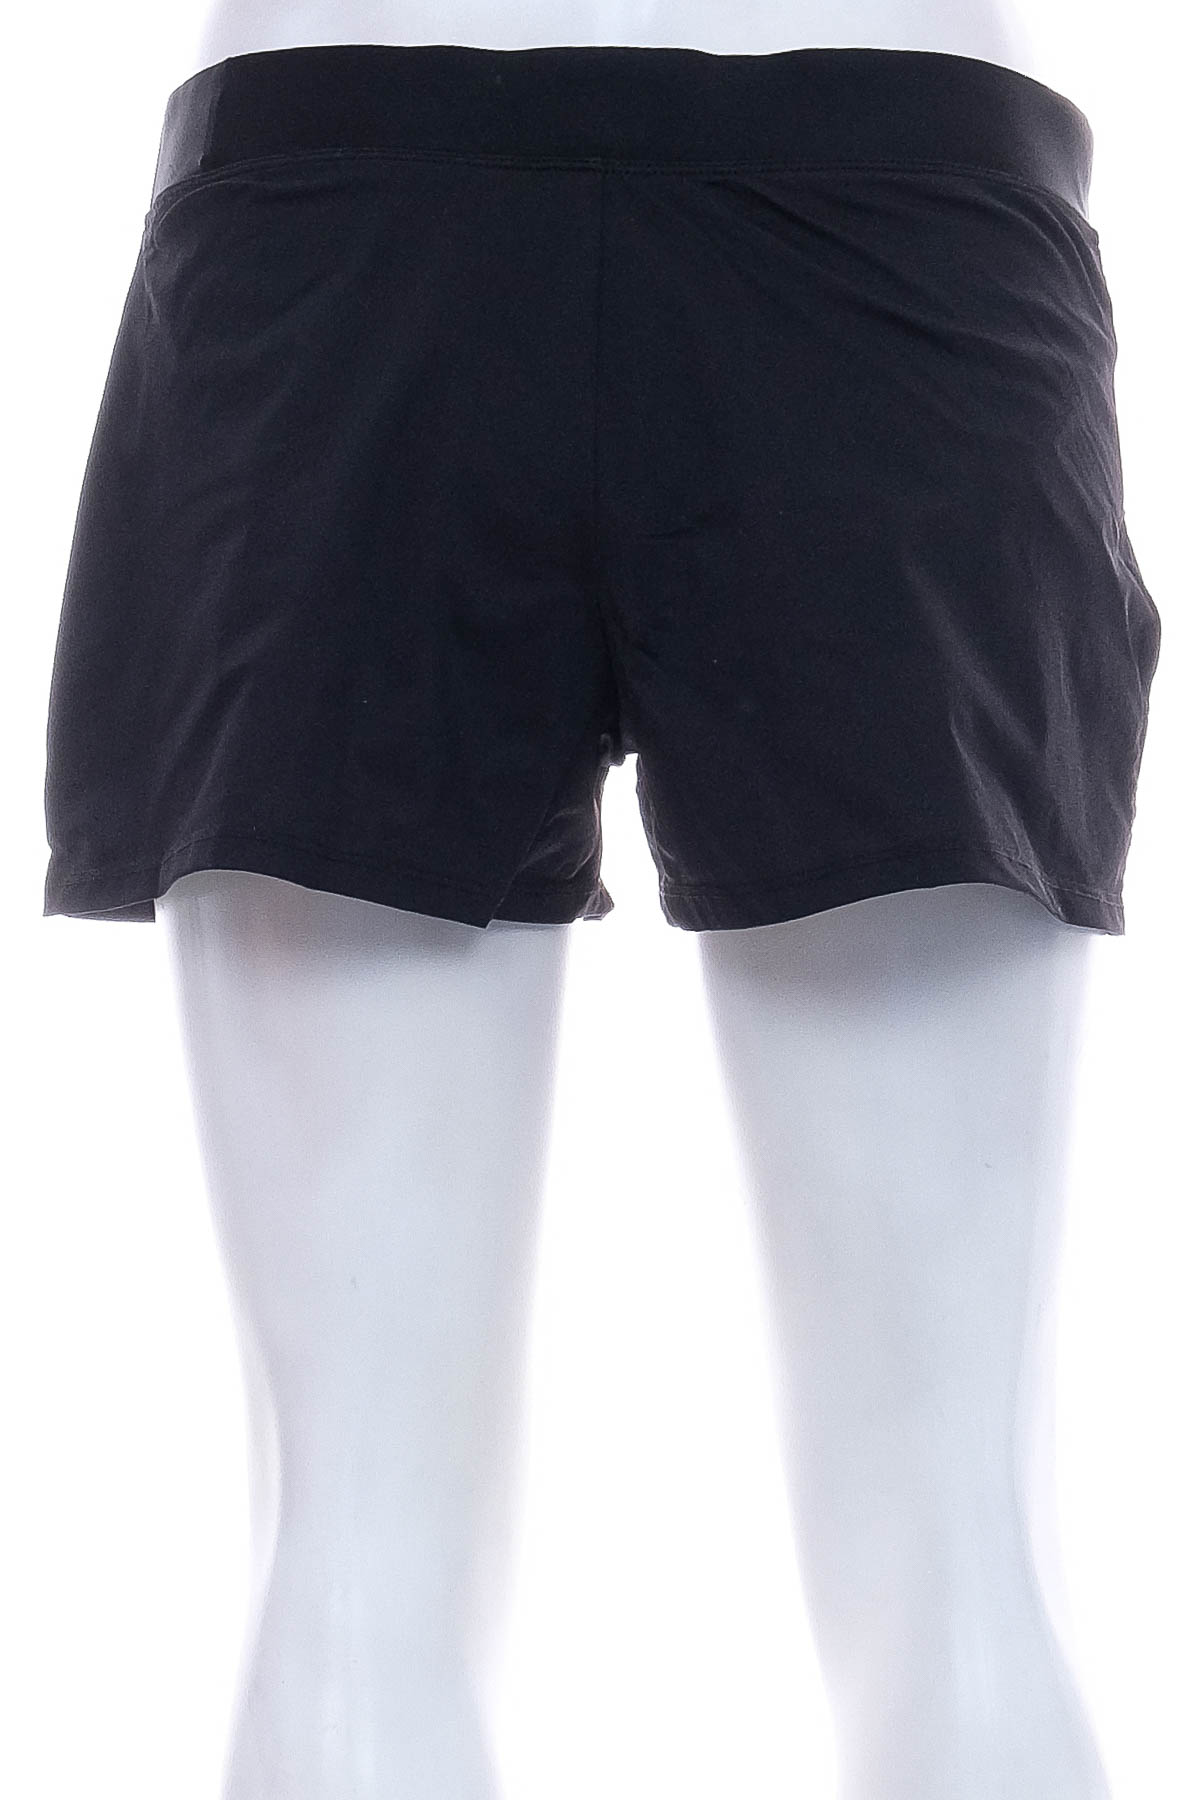 Women's shorts - 1